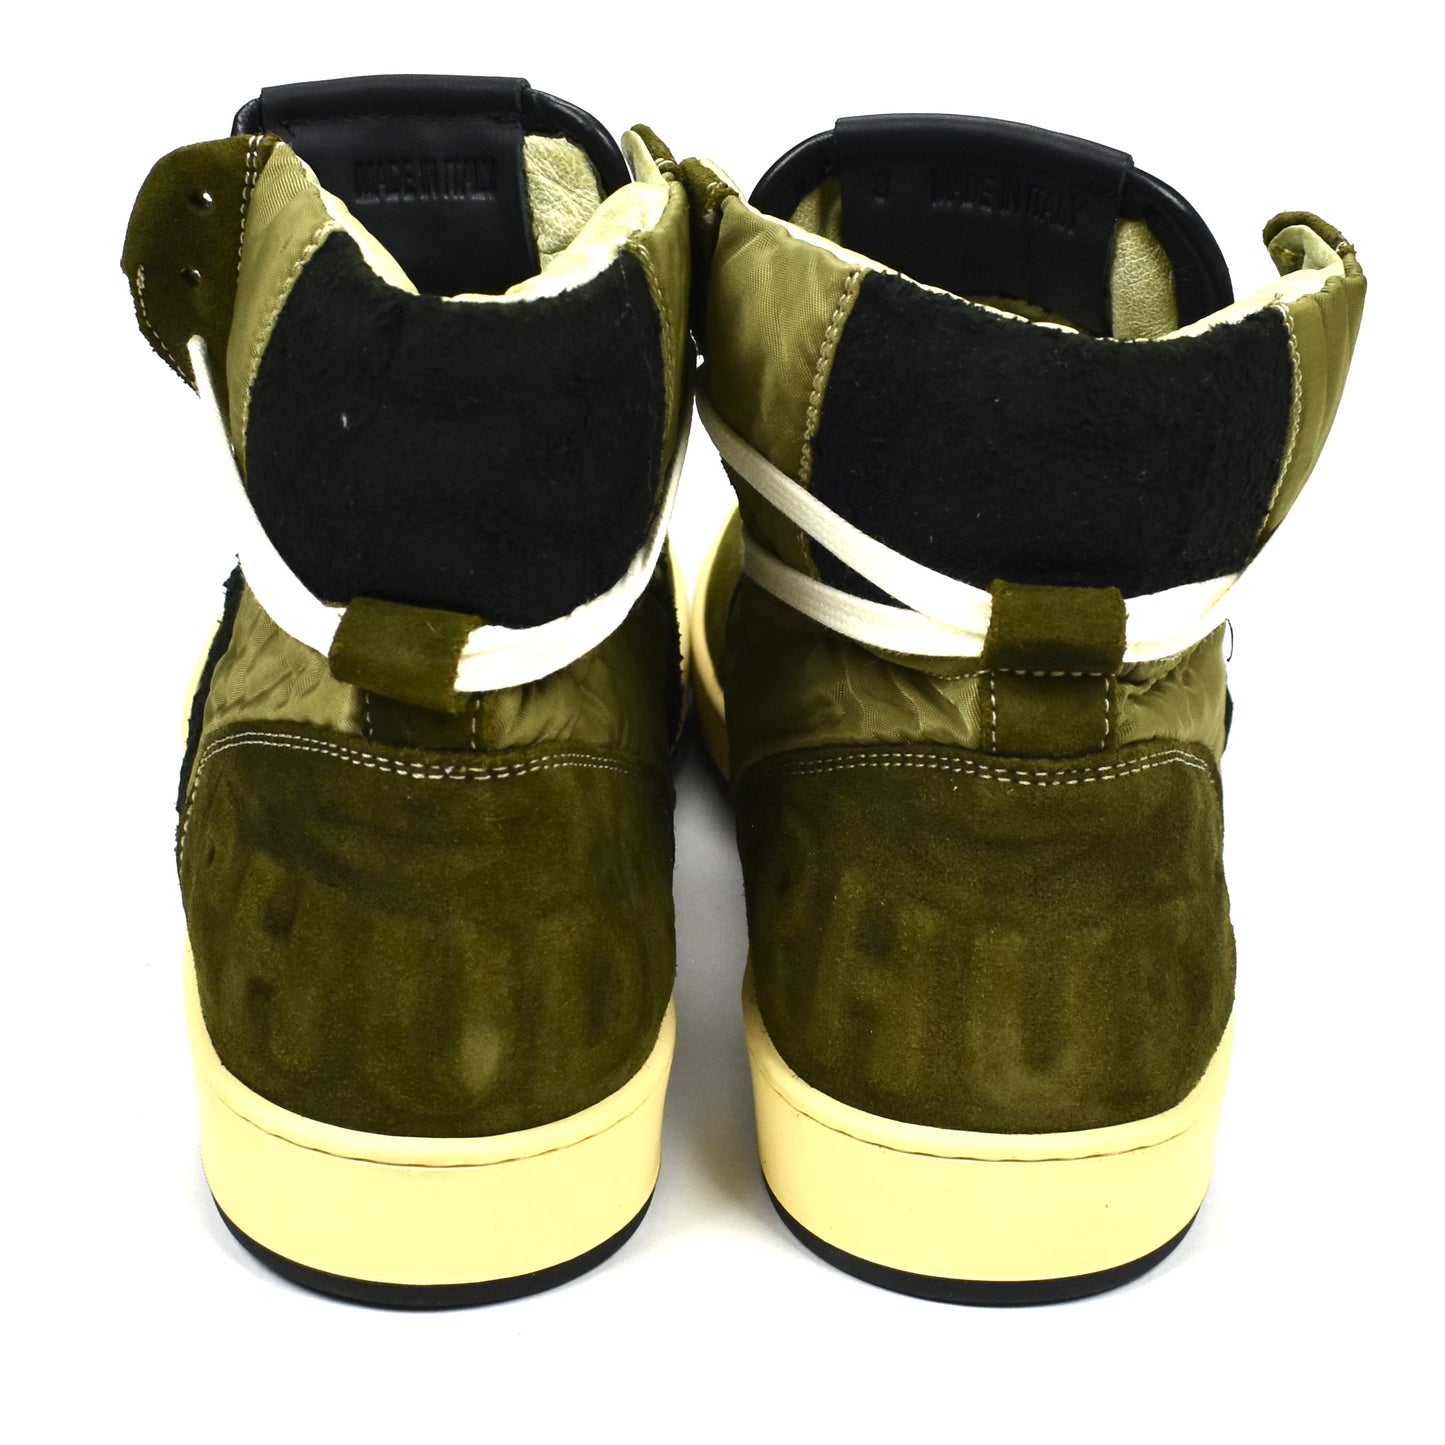 Rhude - Brown Suede / Nylon Rhecess Sneakers